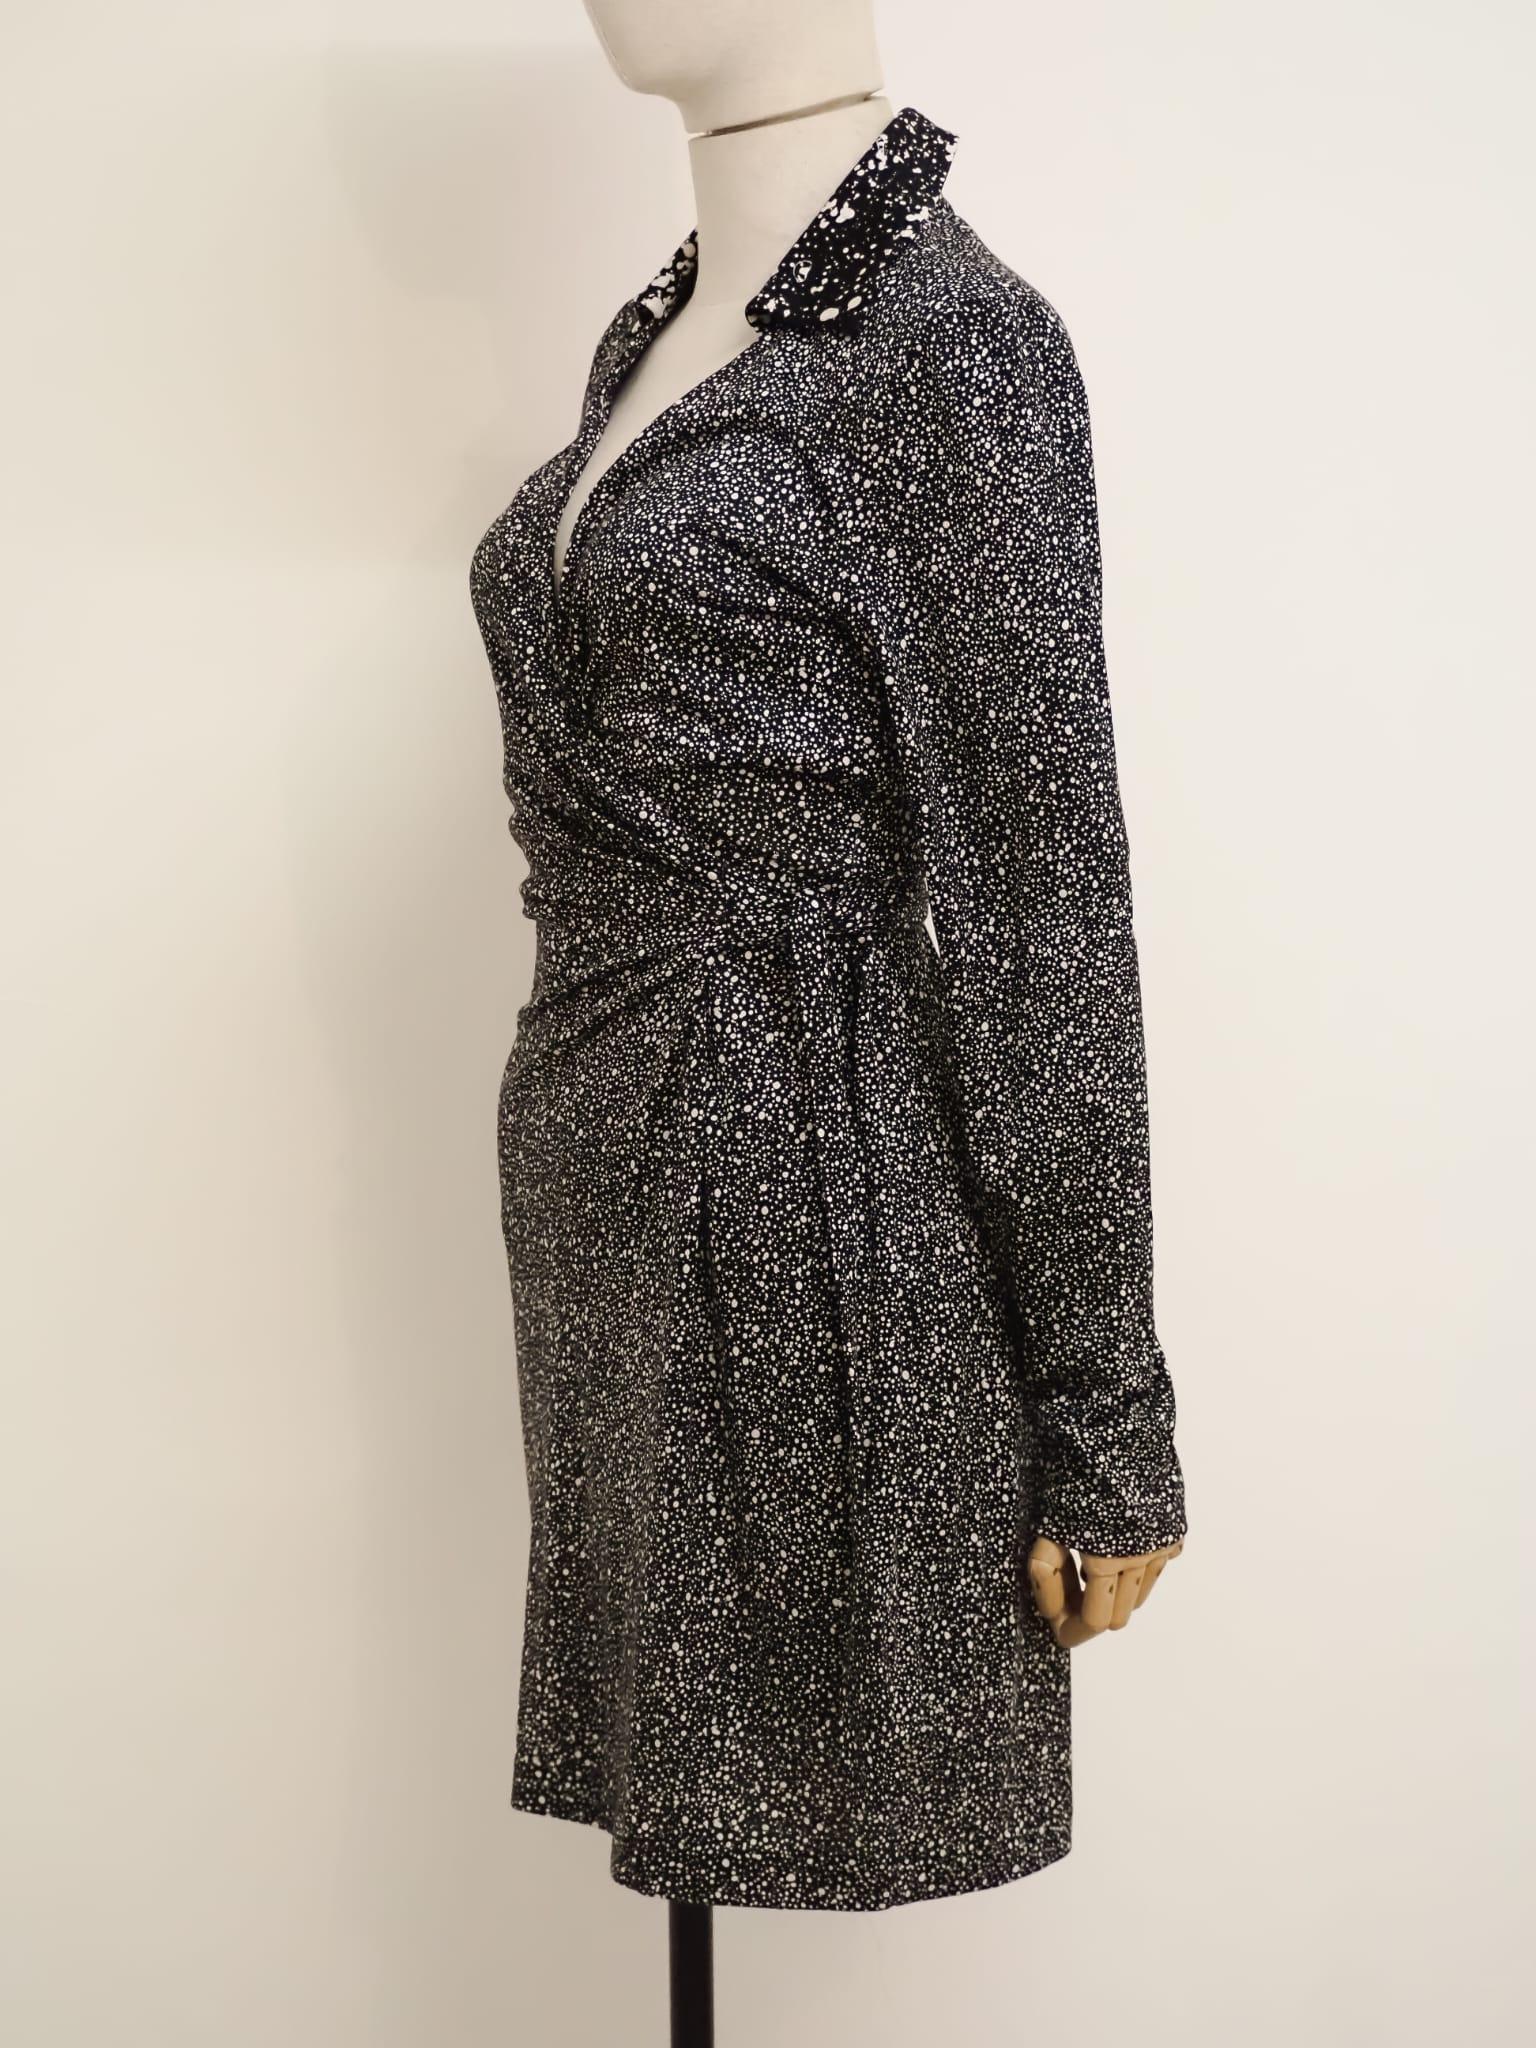 Women's Diane von Furstenberg dress For Sale